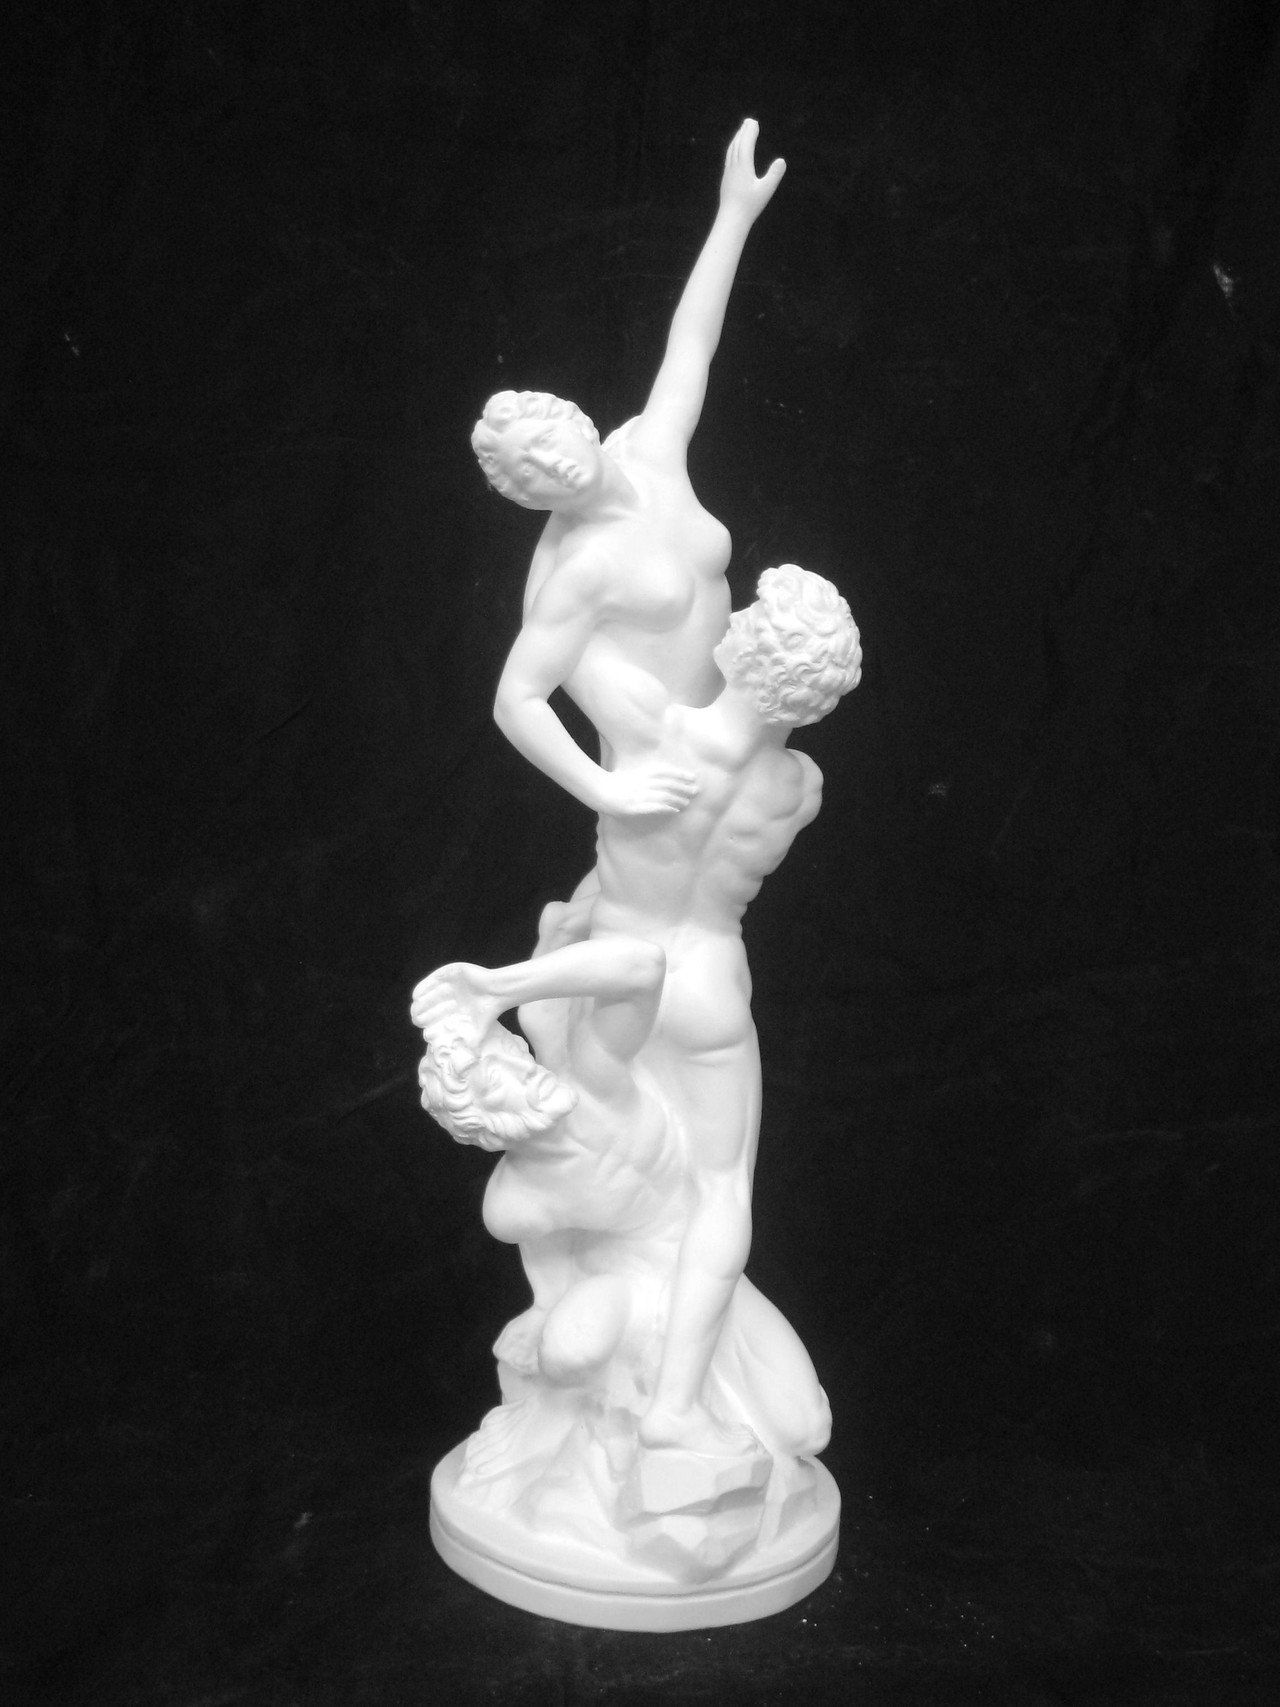 激安買う 今村三郎作品[裸婦]石膏彫刻晩年の秀作 80㎝ 娘のコケティシュ表現 13万円。 その他